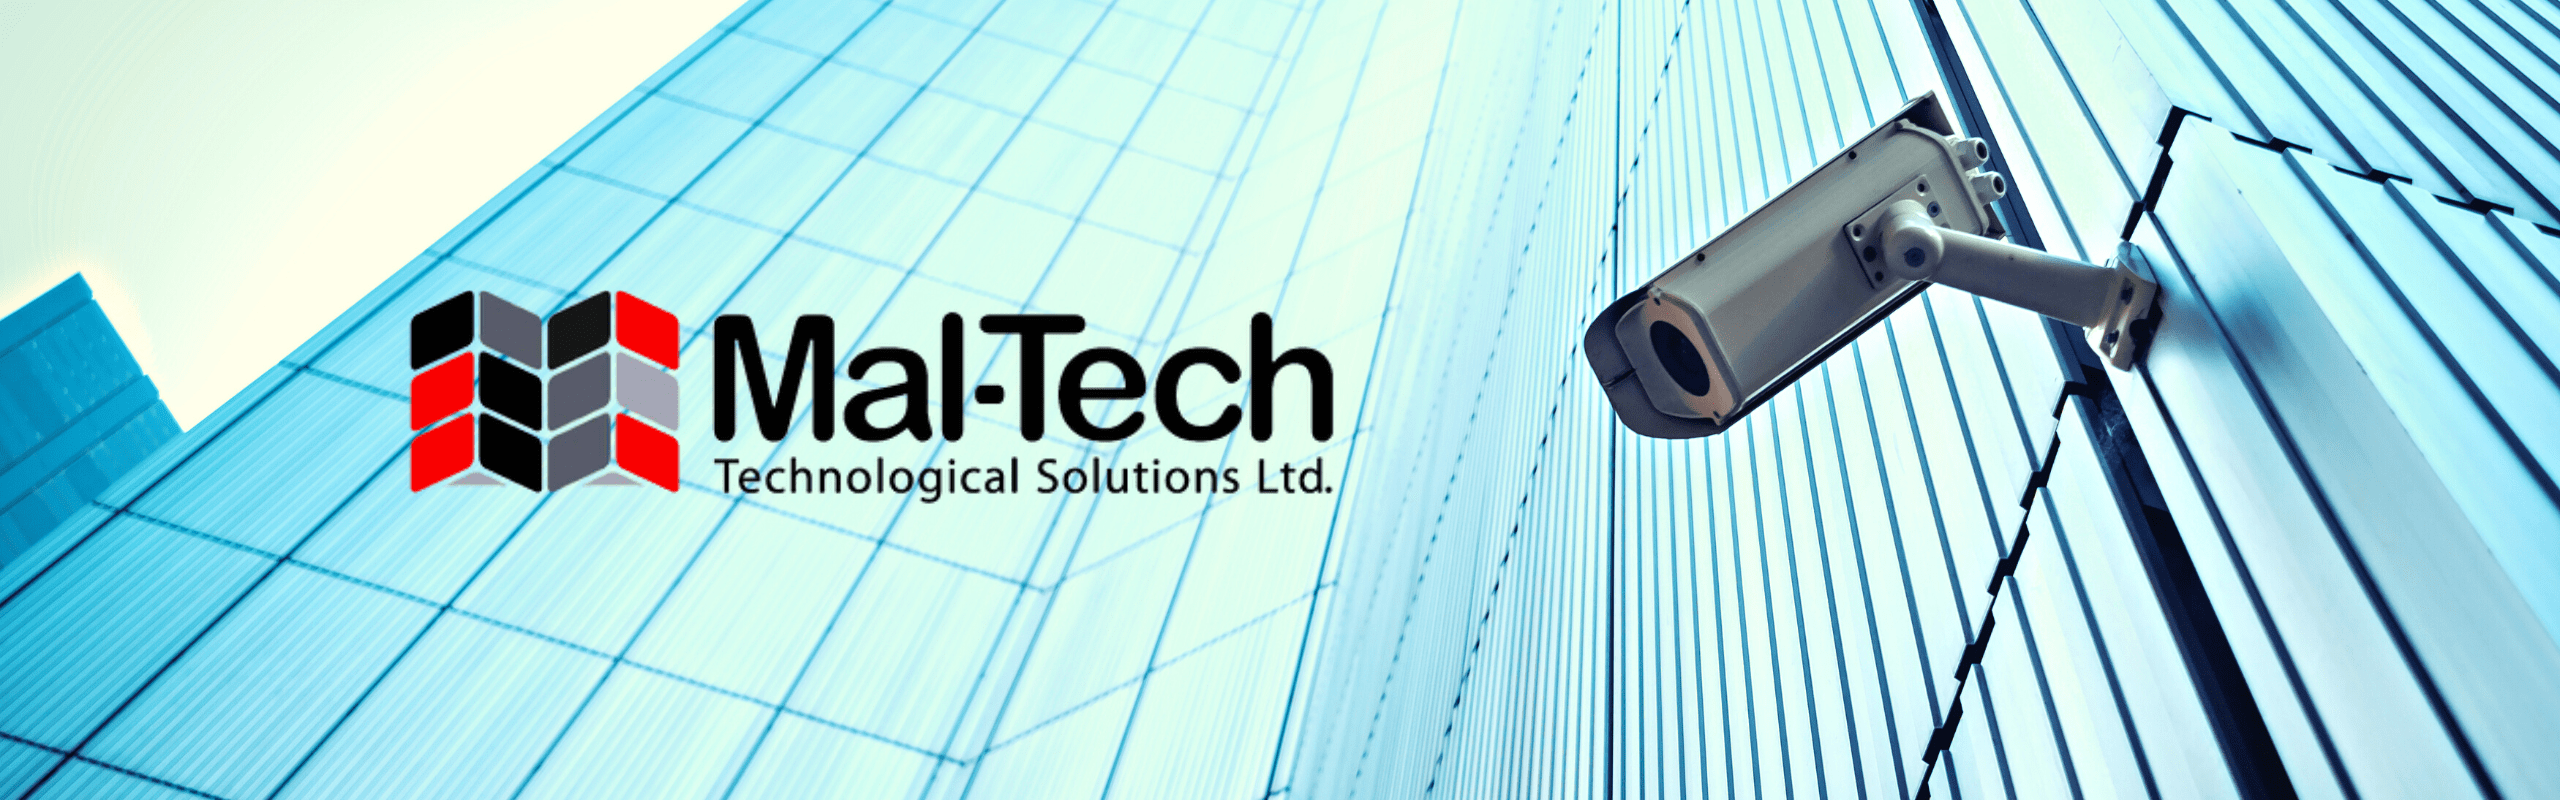 מאל-טק פתרונות טכנולוגיים - Mal-Tech Technological Solutions